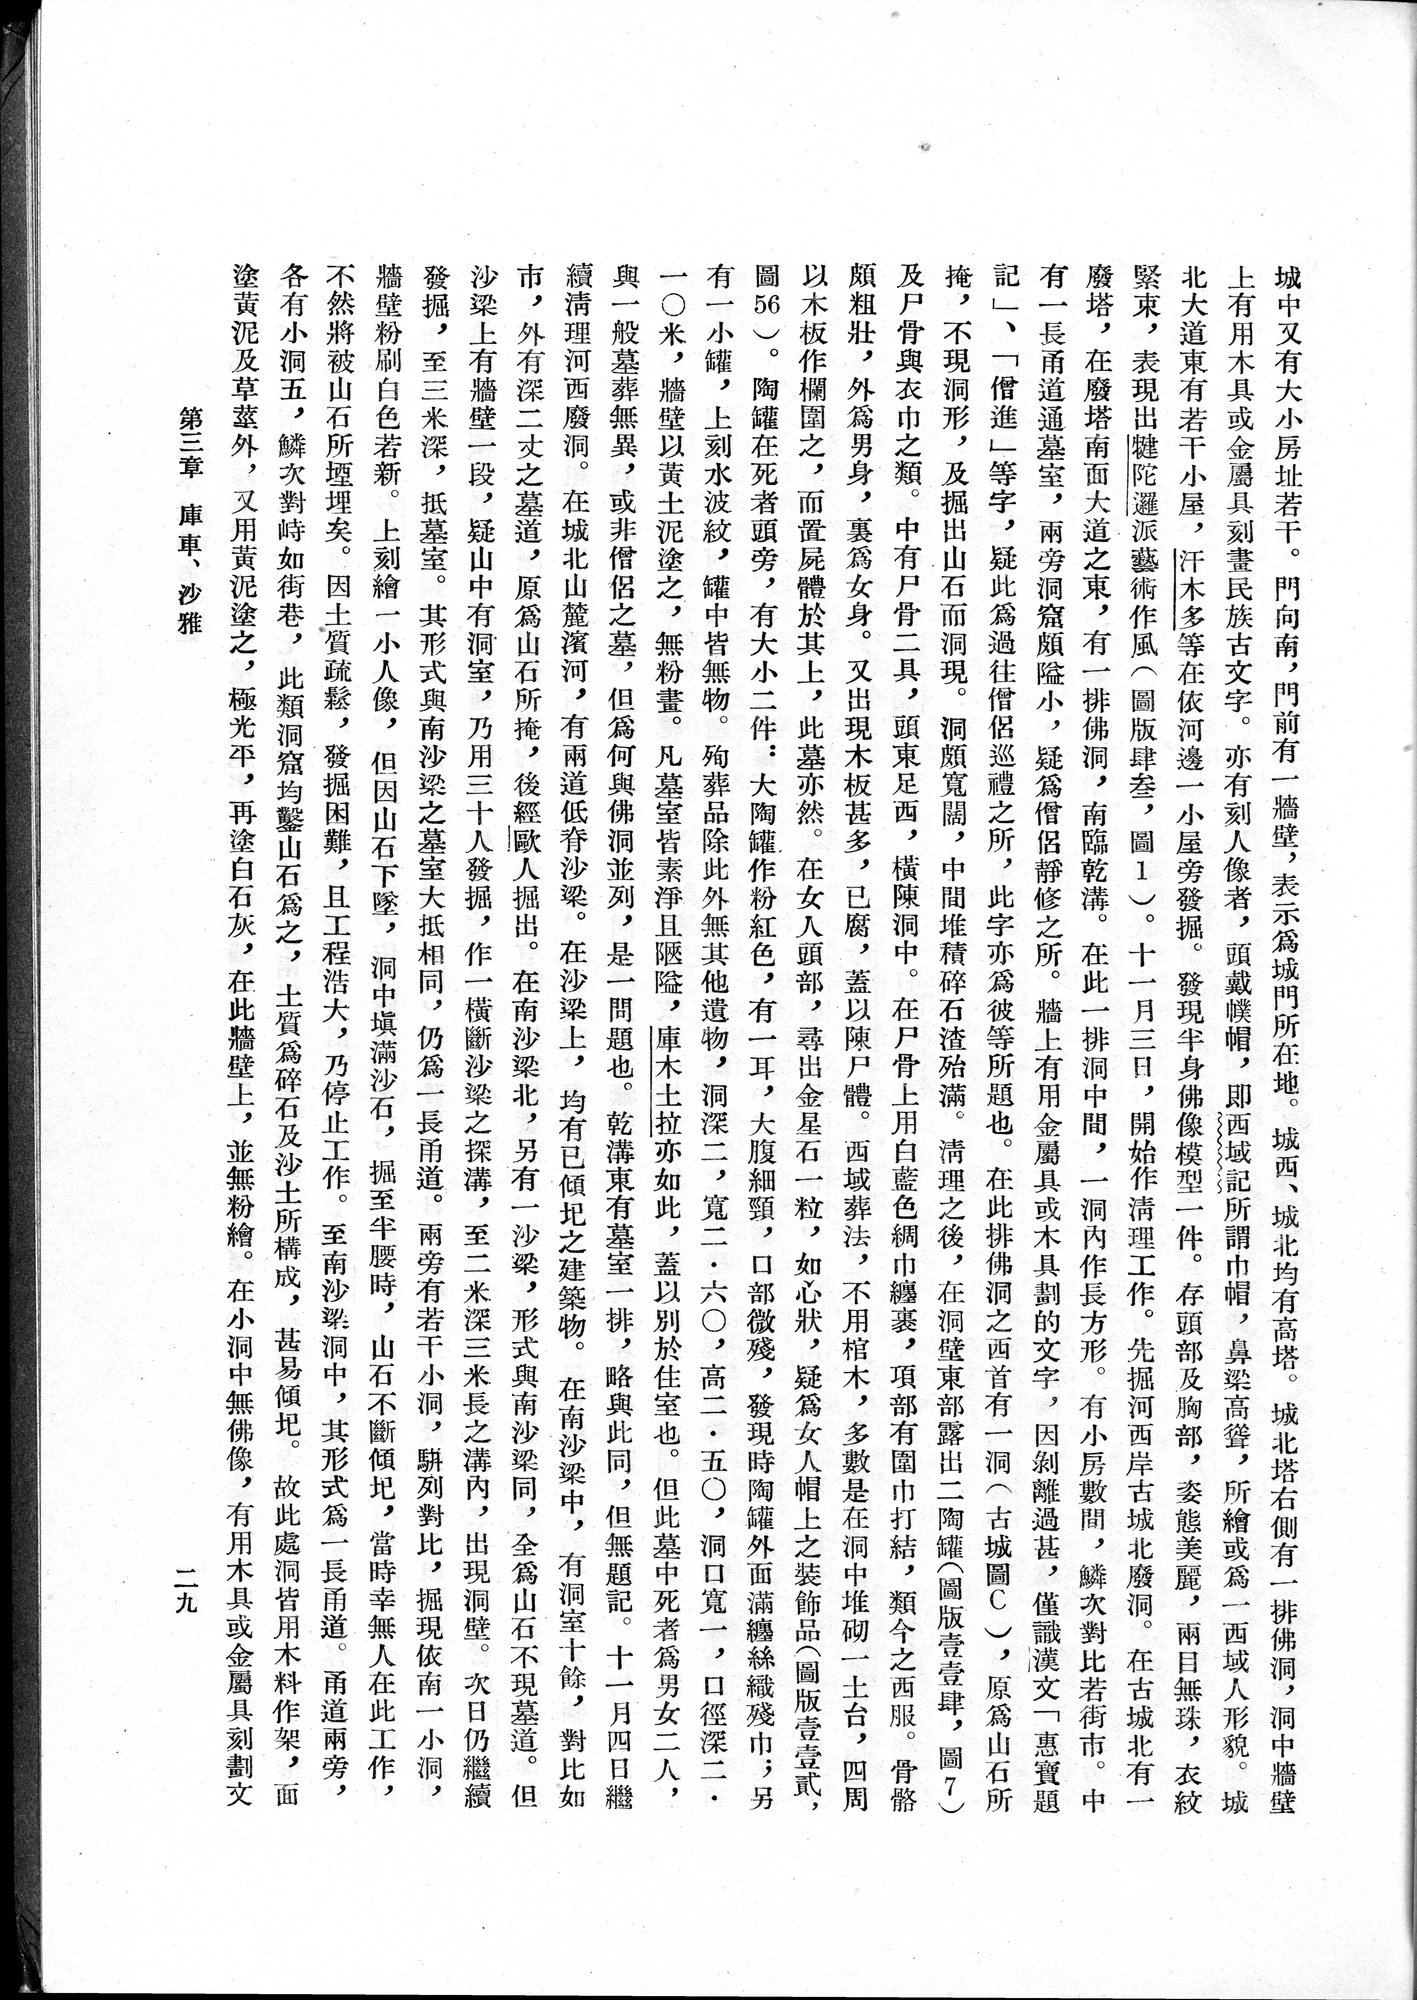 塔里木盆地考古記 : vol.1 / Page 53 (Grayscale High Resolution Image)